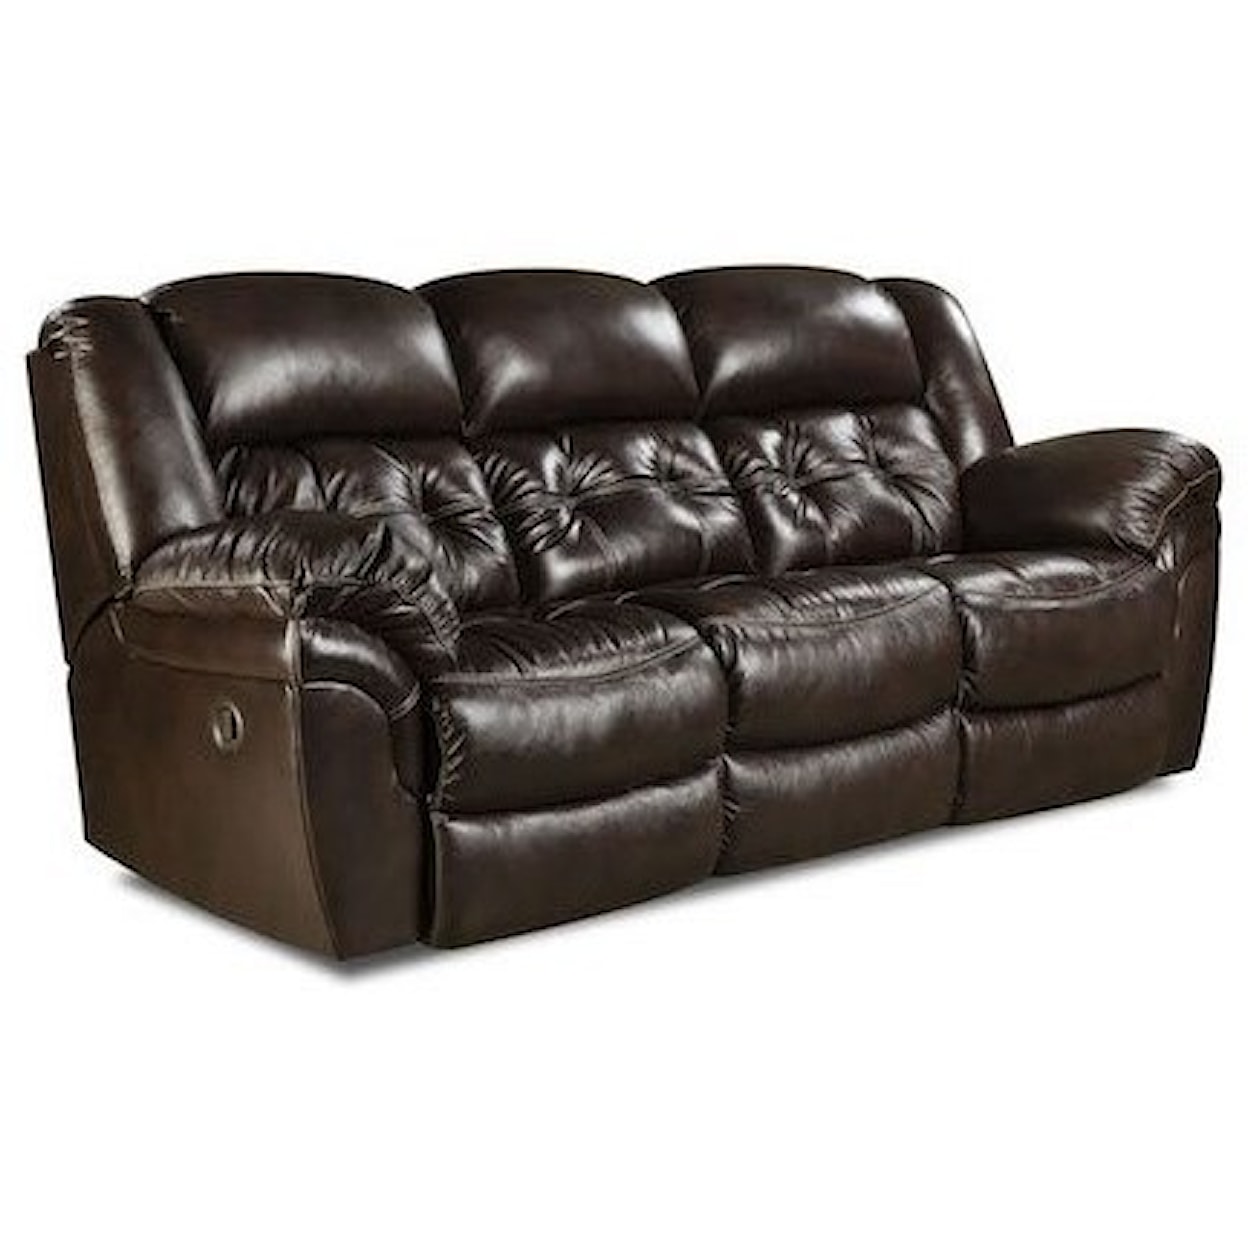 HomeStretch Cheyenne Leather Reclining Sofa